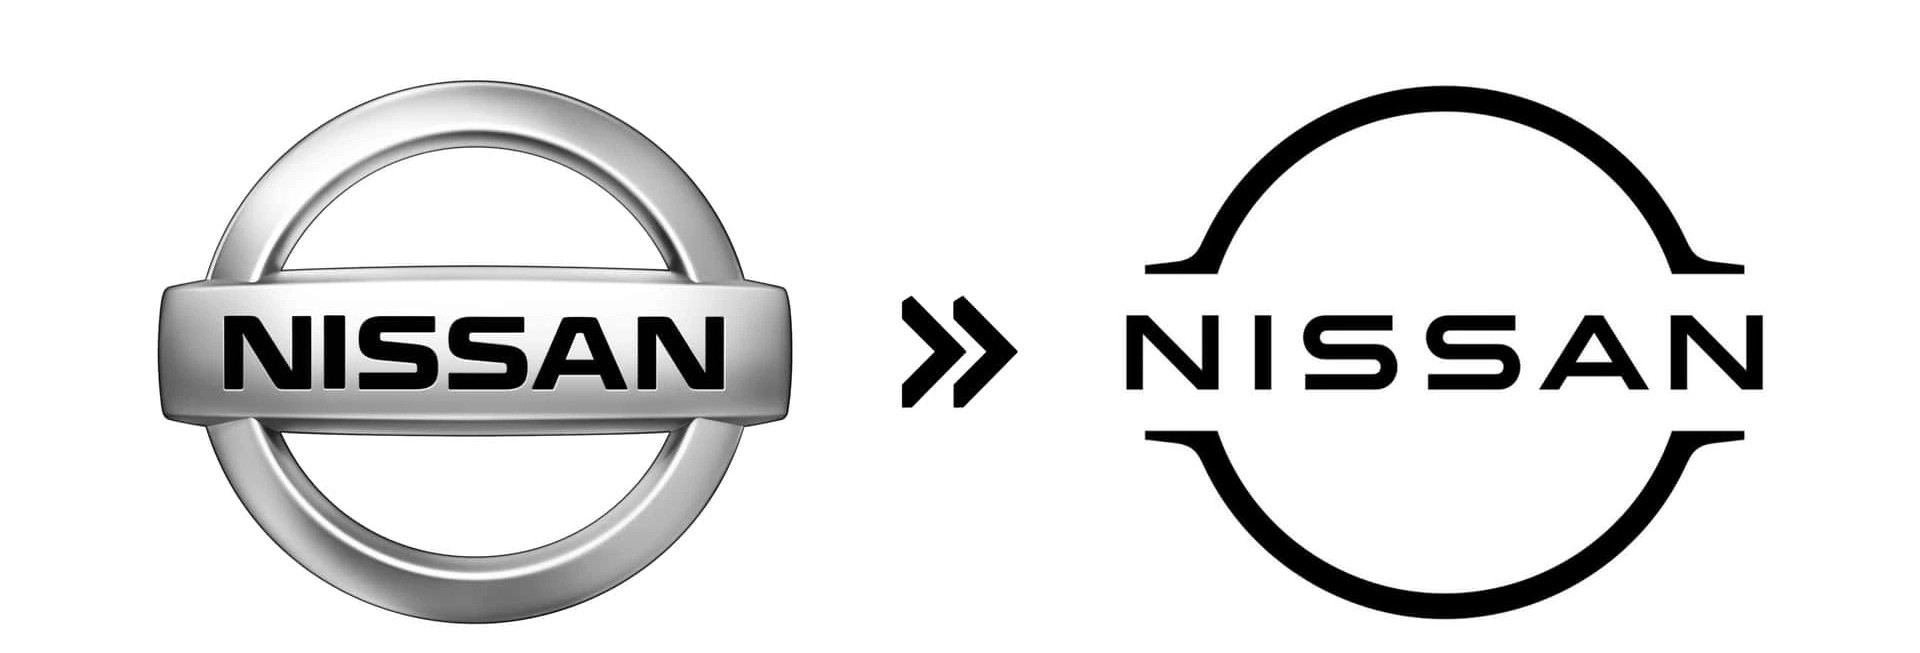 Nissan (2021): Đơn giản hơn, gọn gàng hơn và cũng hòa nhã hơn là logo Nissan mới, thay vì phong cách có phần khá cồng kềnh của bản cũ - Ảnh: Motor1